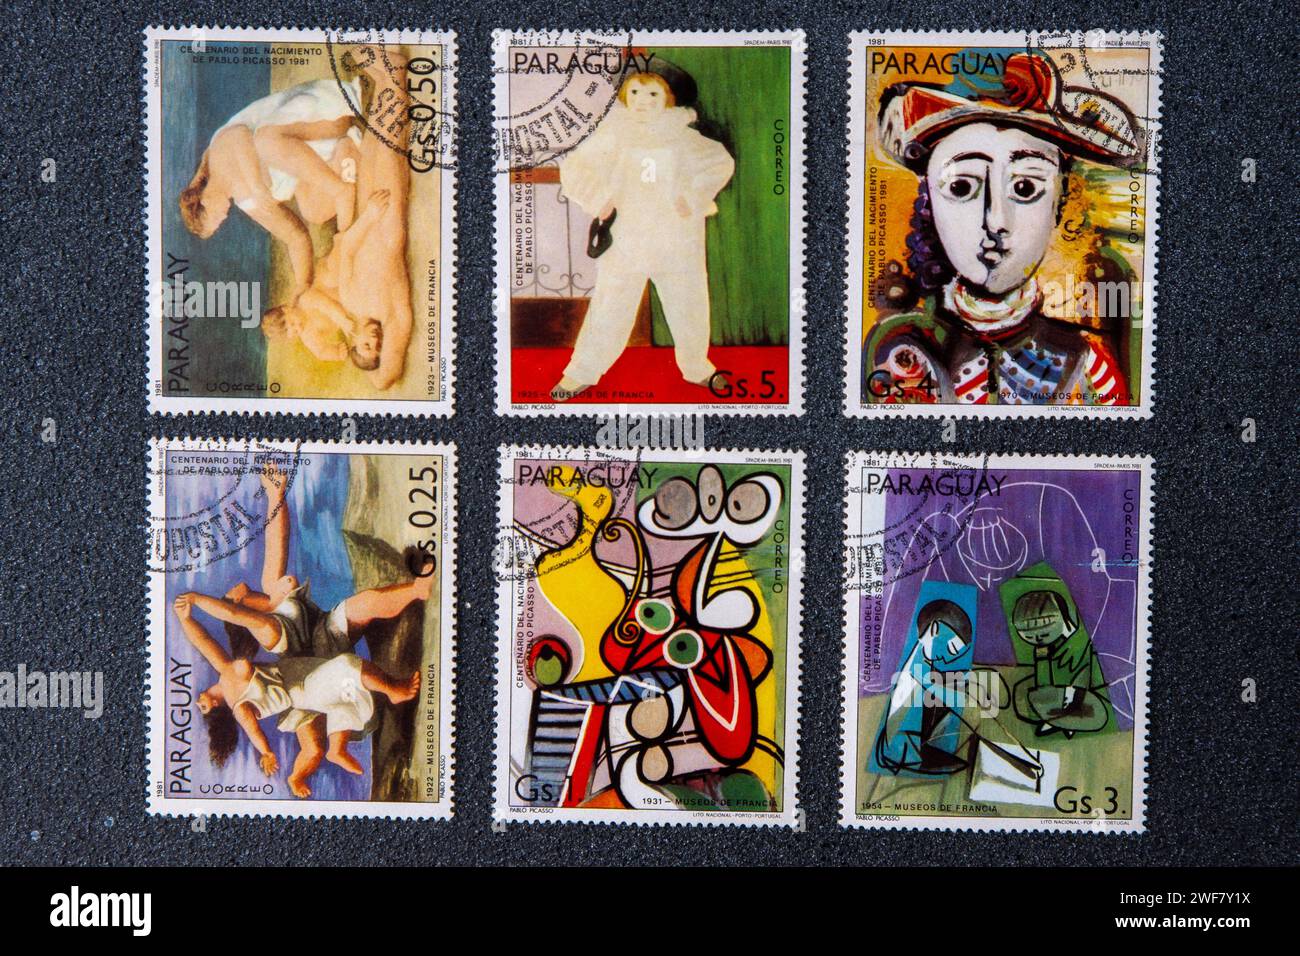 Série de différents timbres-poste avec peinture Pablo Picasso. PARAGUAY - circa 1981. Banque D'Images